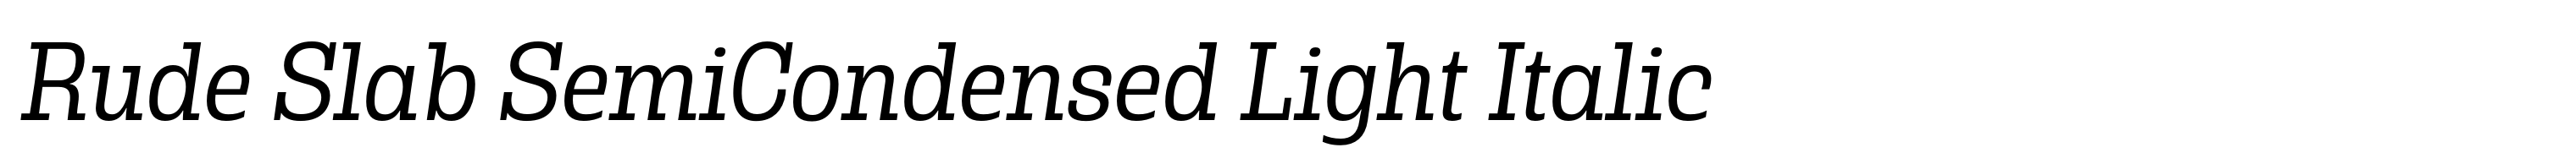 Rude Slab SemiCondensed Light Italic